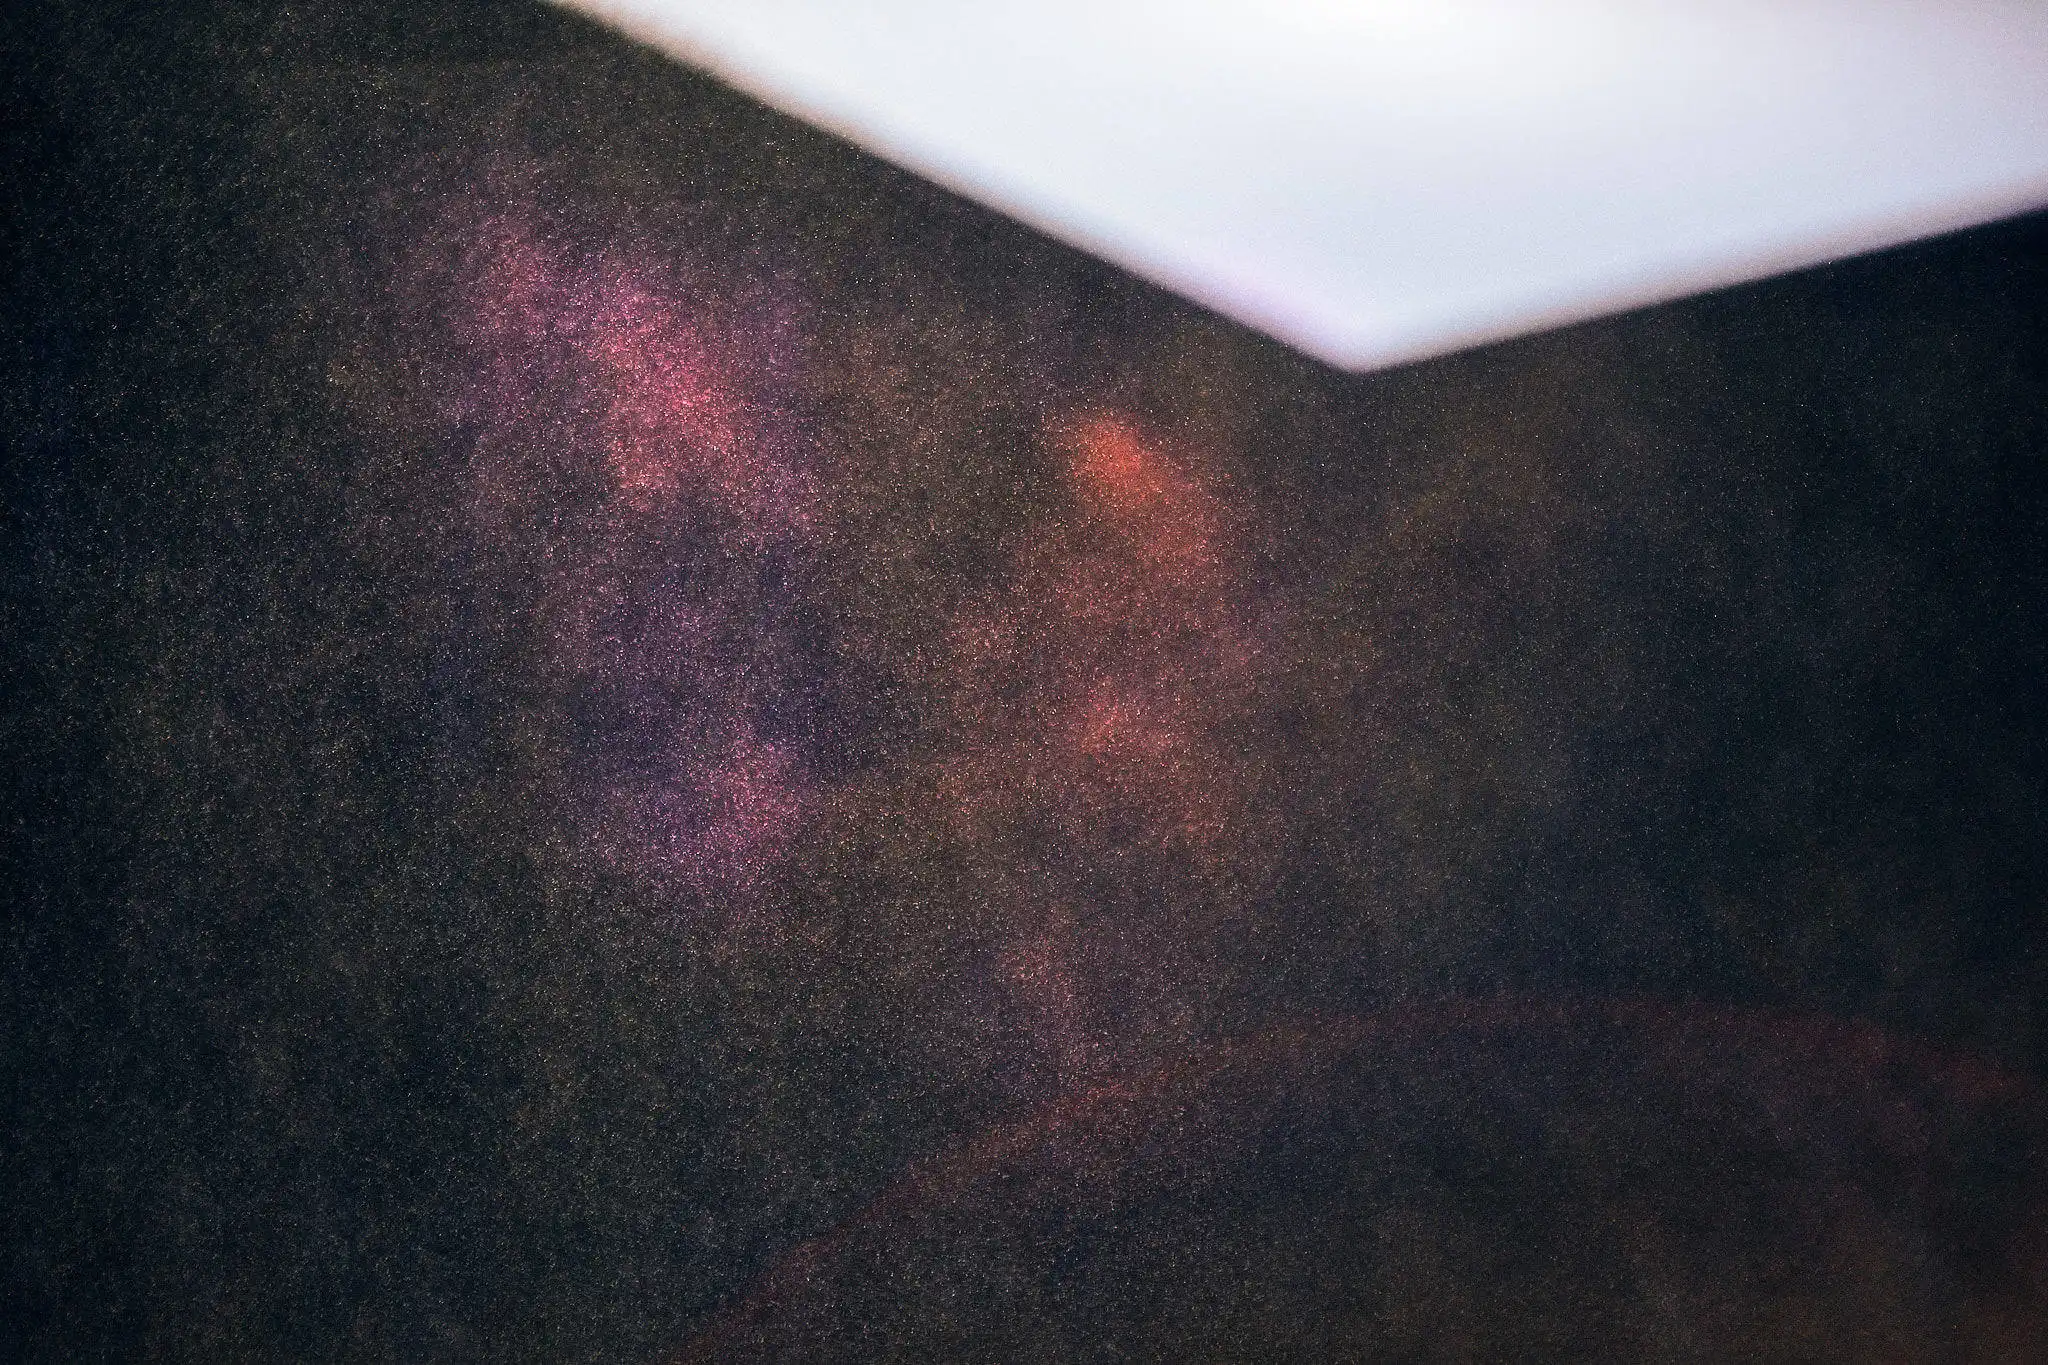 Abstraktes Foto von Partikeln, die vor einem Lichtpfeil schweben, der nach unten zeigt, um zu weiterem Scrollen zu animieren.